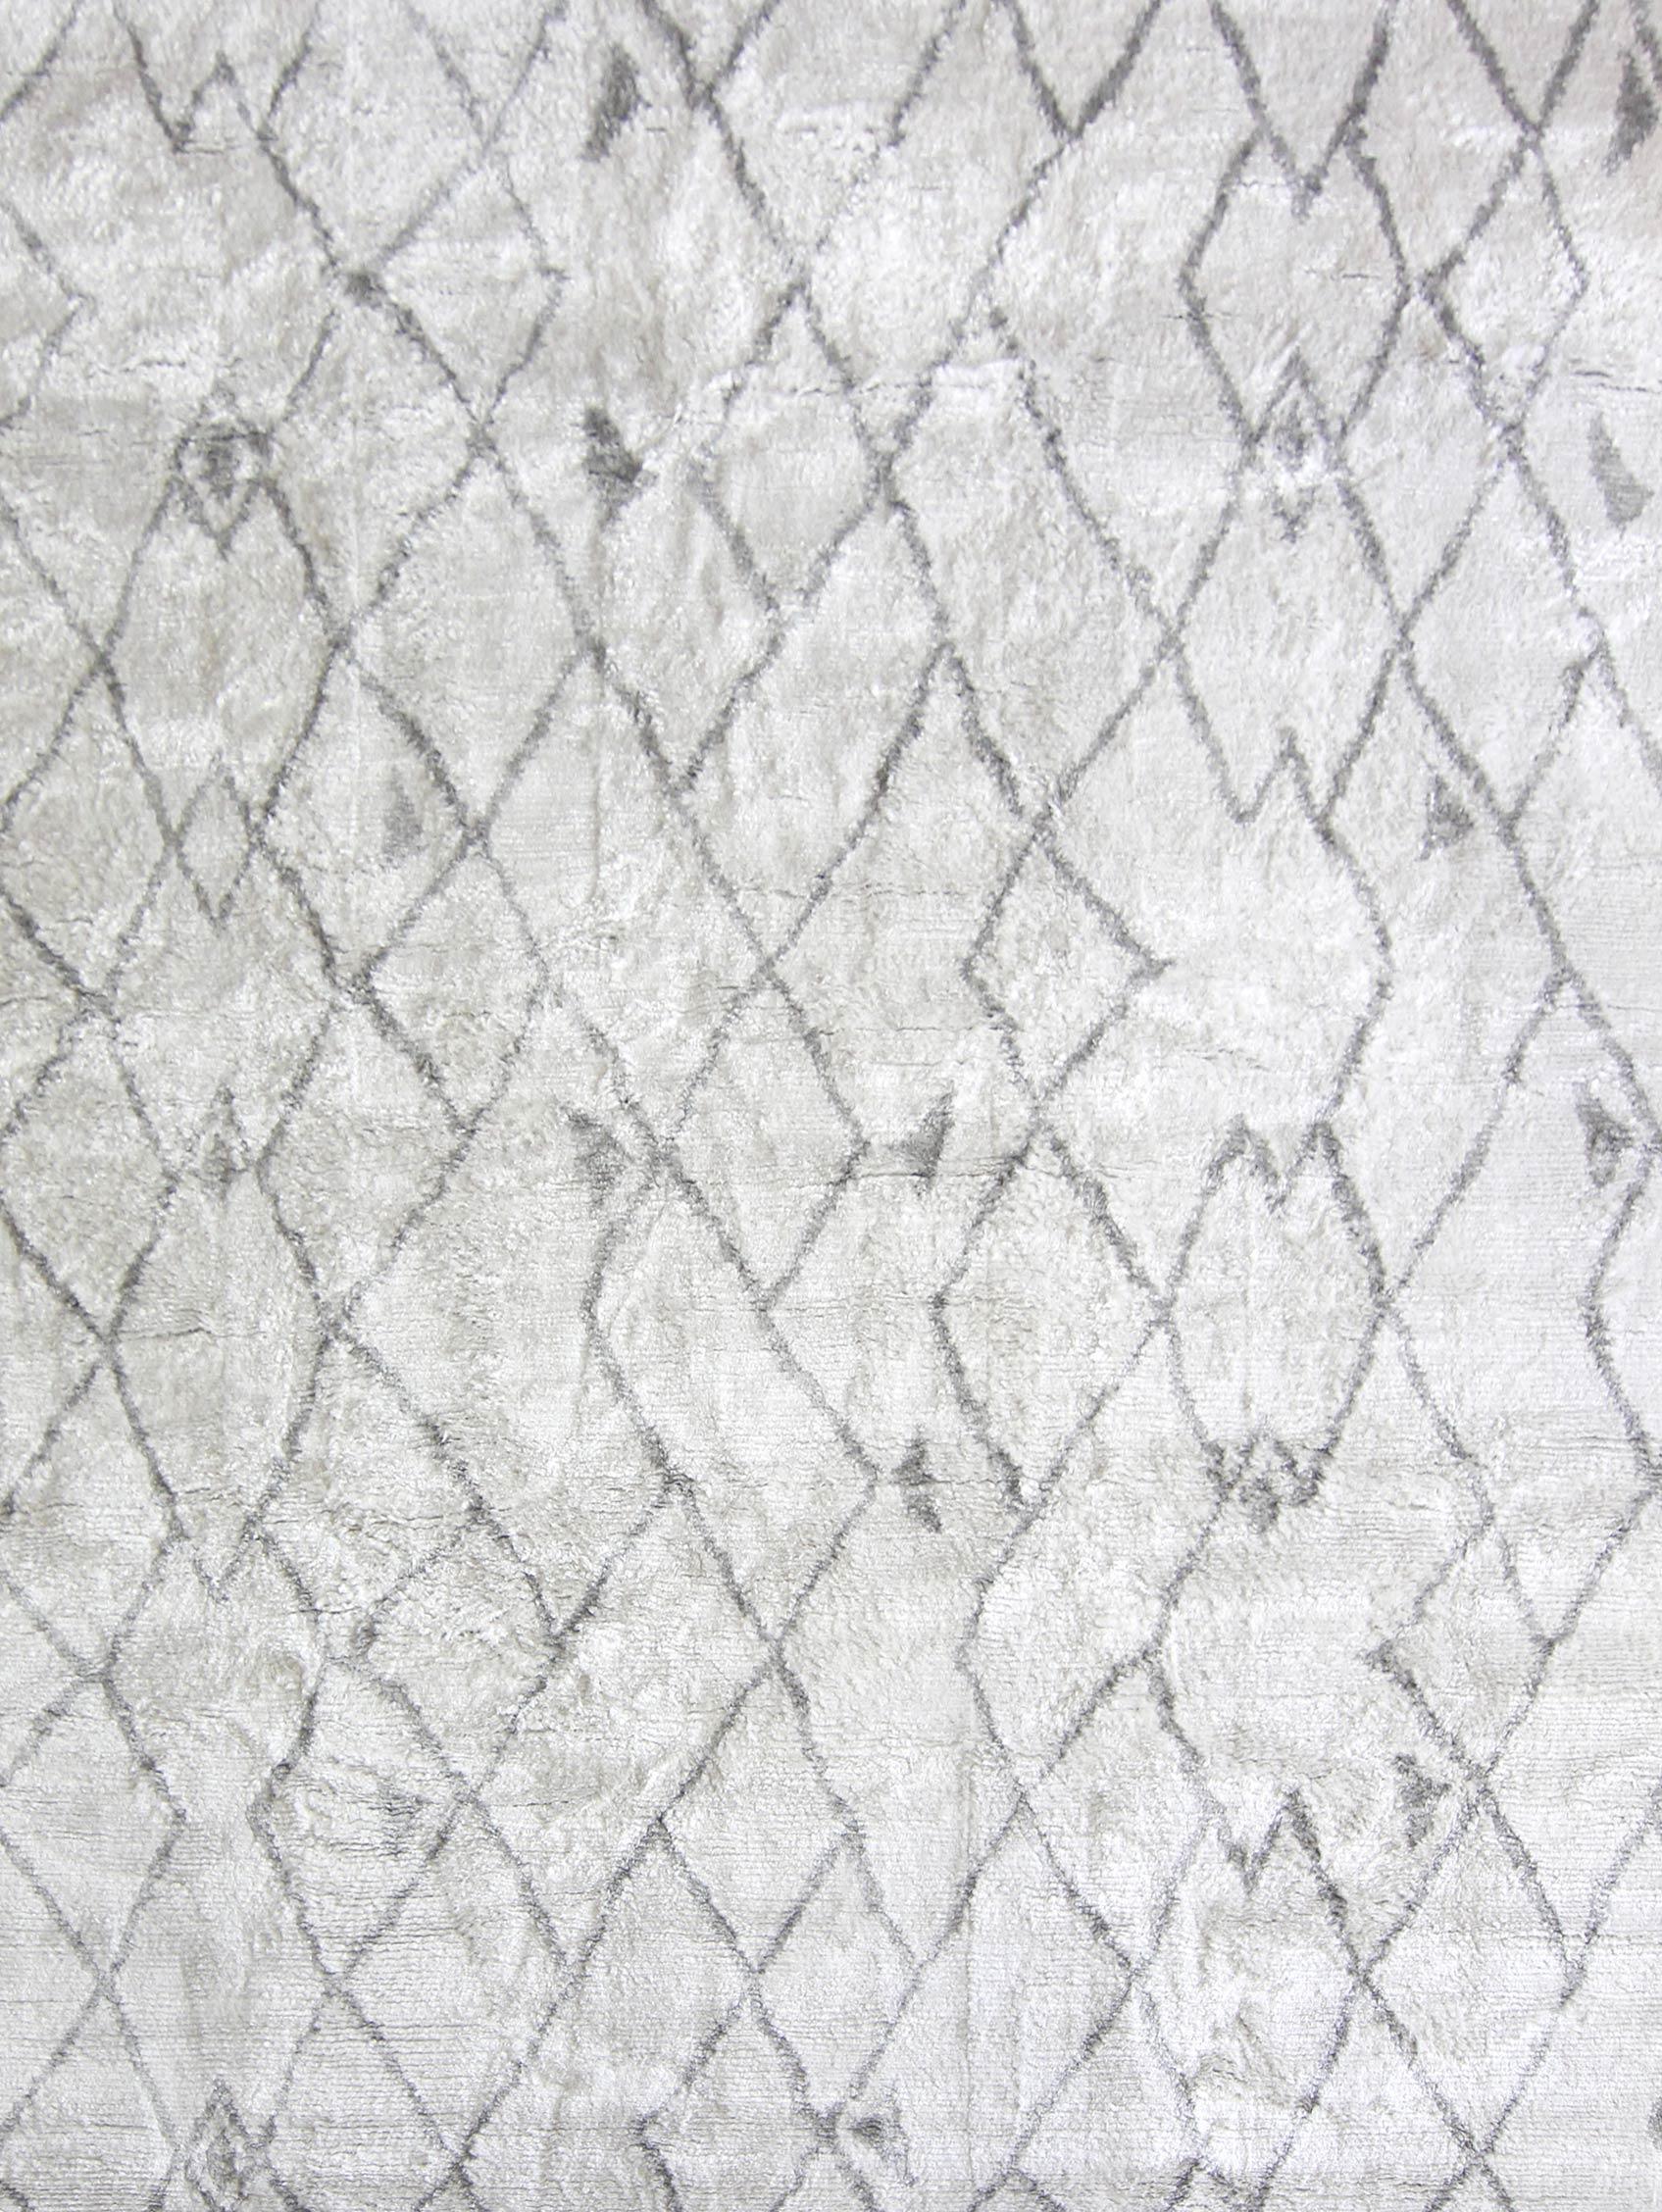 Peaks, handgeknüpfter Teppich von Eskayel
Abmessungen: D 6' x H 8'
Pfahlhöhe: 10 mm 
MATERIALIEN: 100% Seide.

Die handgeknüpften Teppiche von Eskayel werden auf Bestellung gewebt und können in verschiedenen Größen, Farben, MATERIALEN und